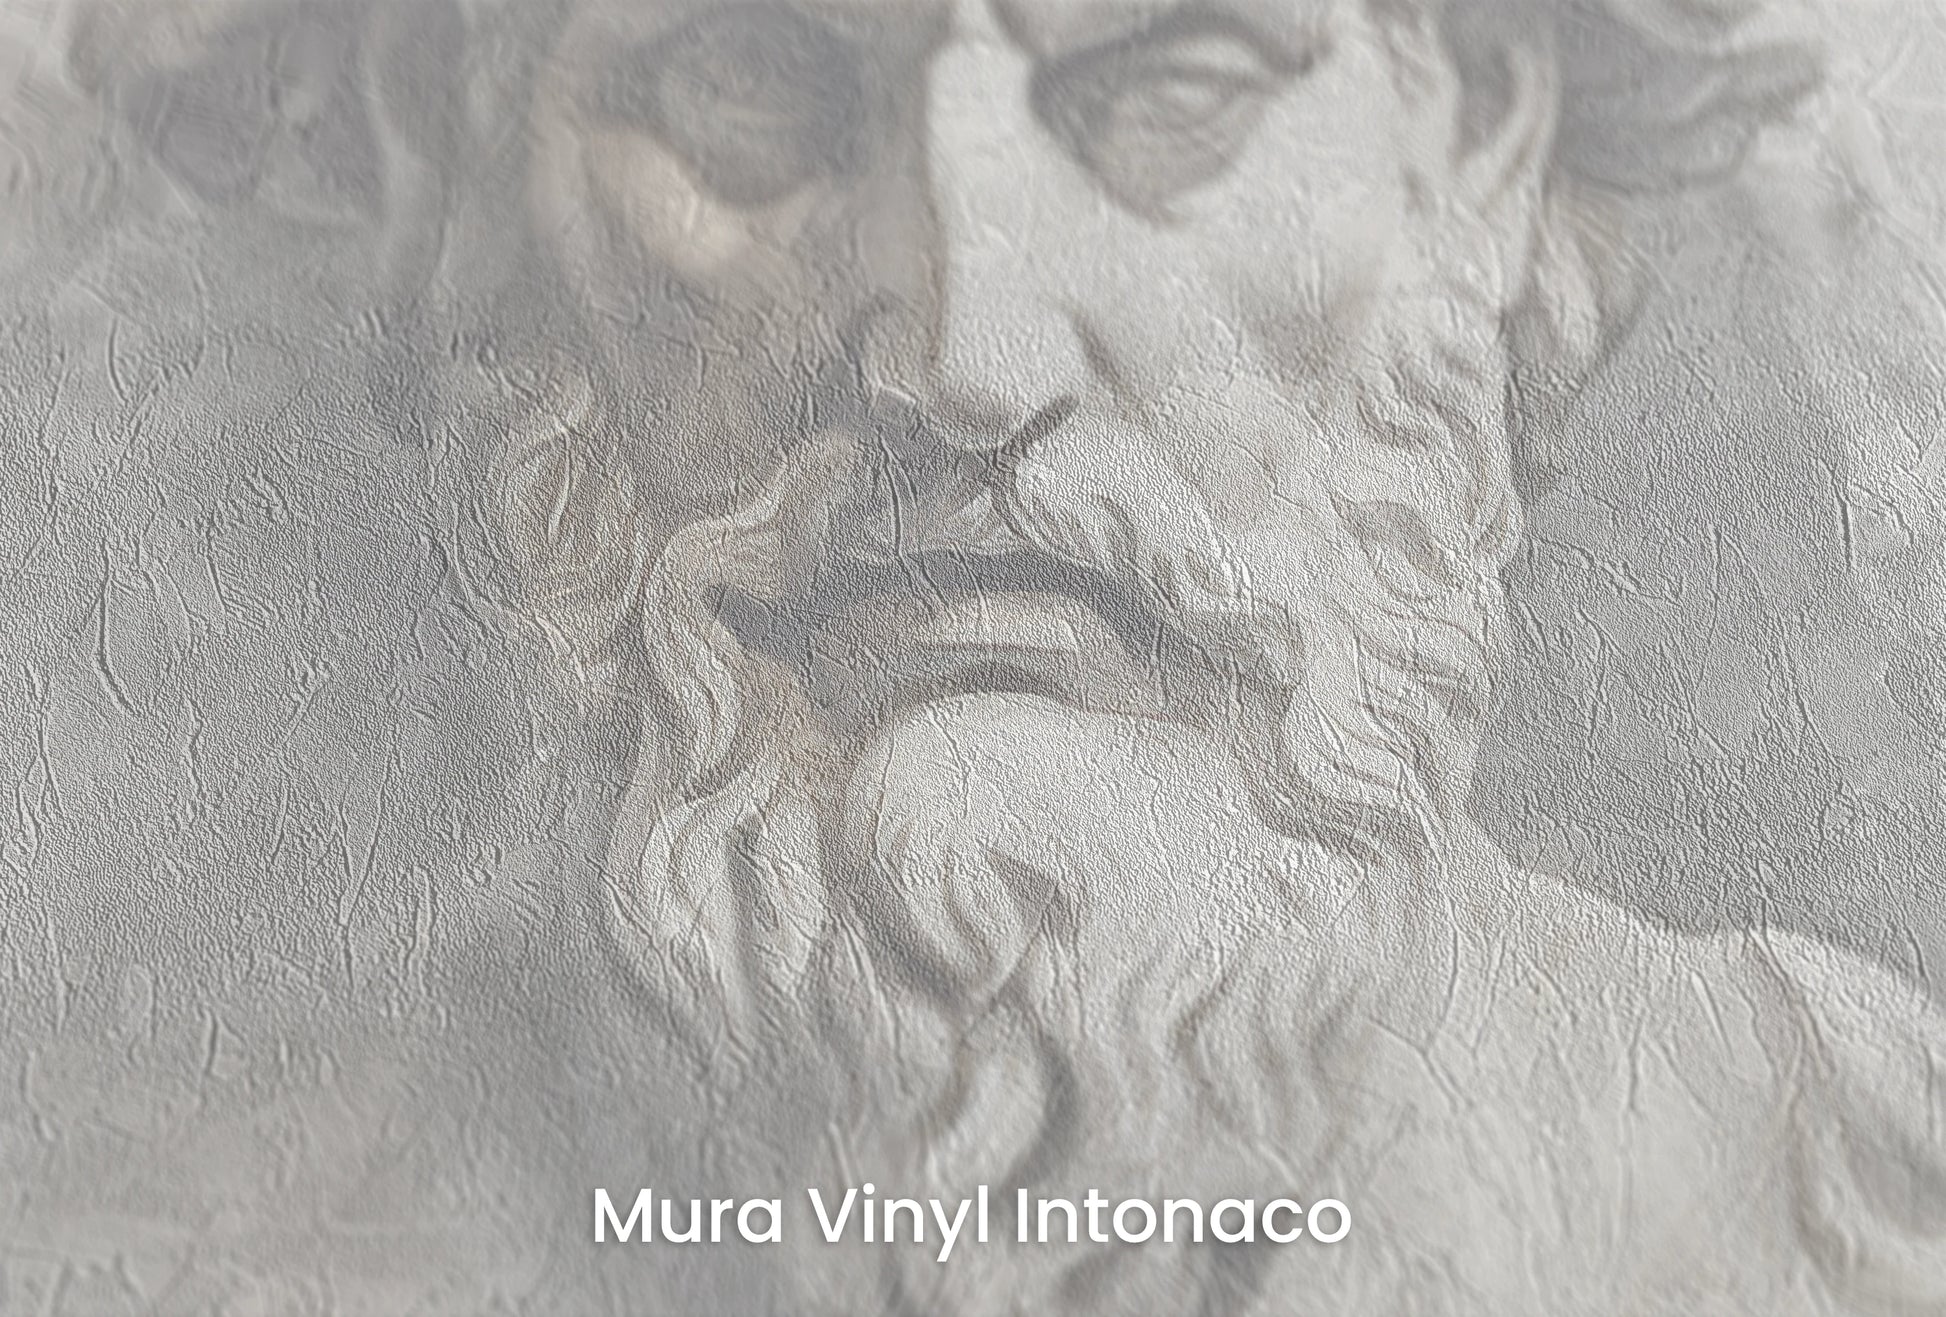 Zbliżenie na artystyczną fototapetę o nazwie Zeus's Majesty na podłożu Mura Vinyl Intonaco - struktura tartego tynku.